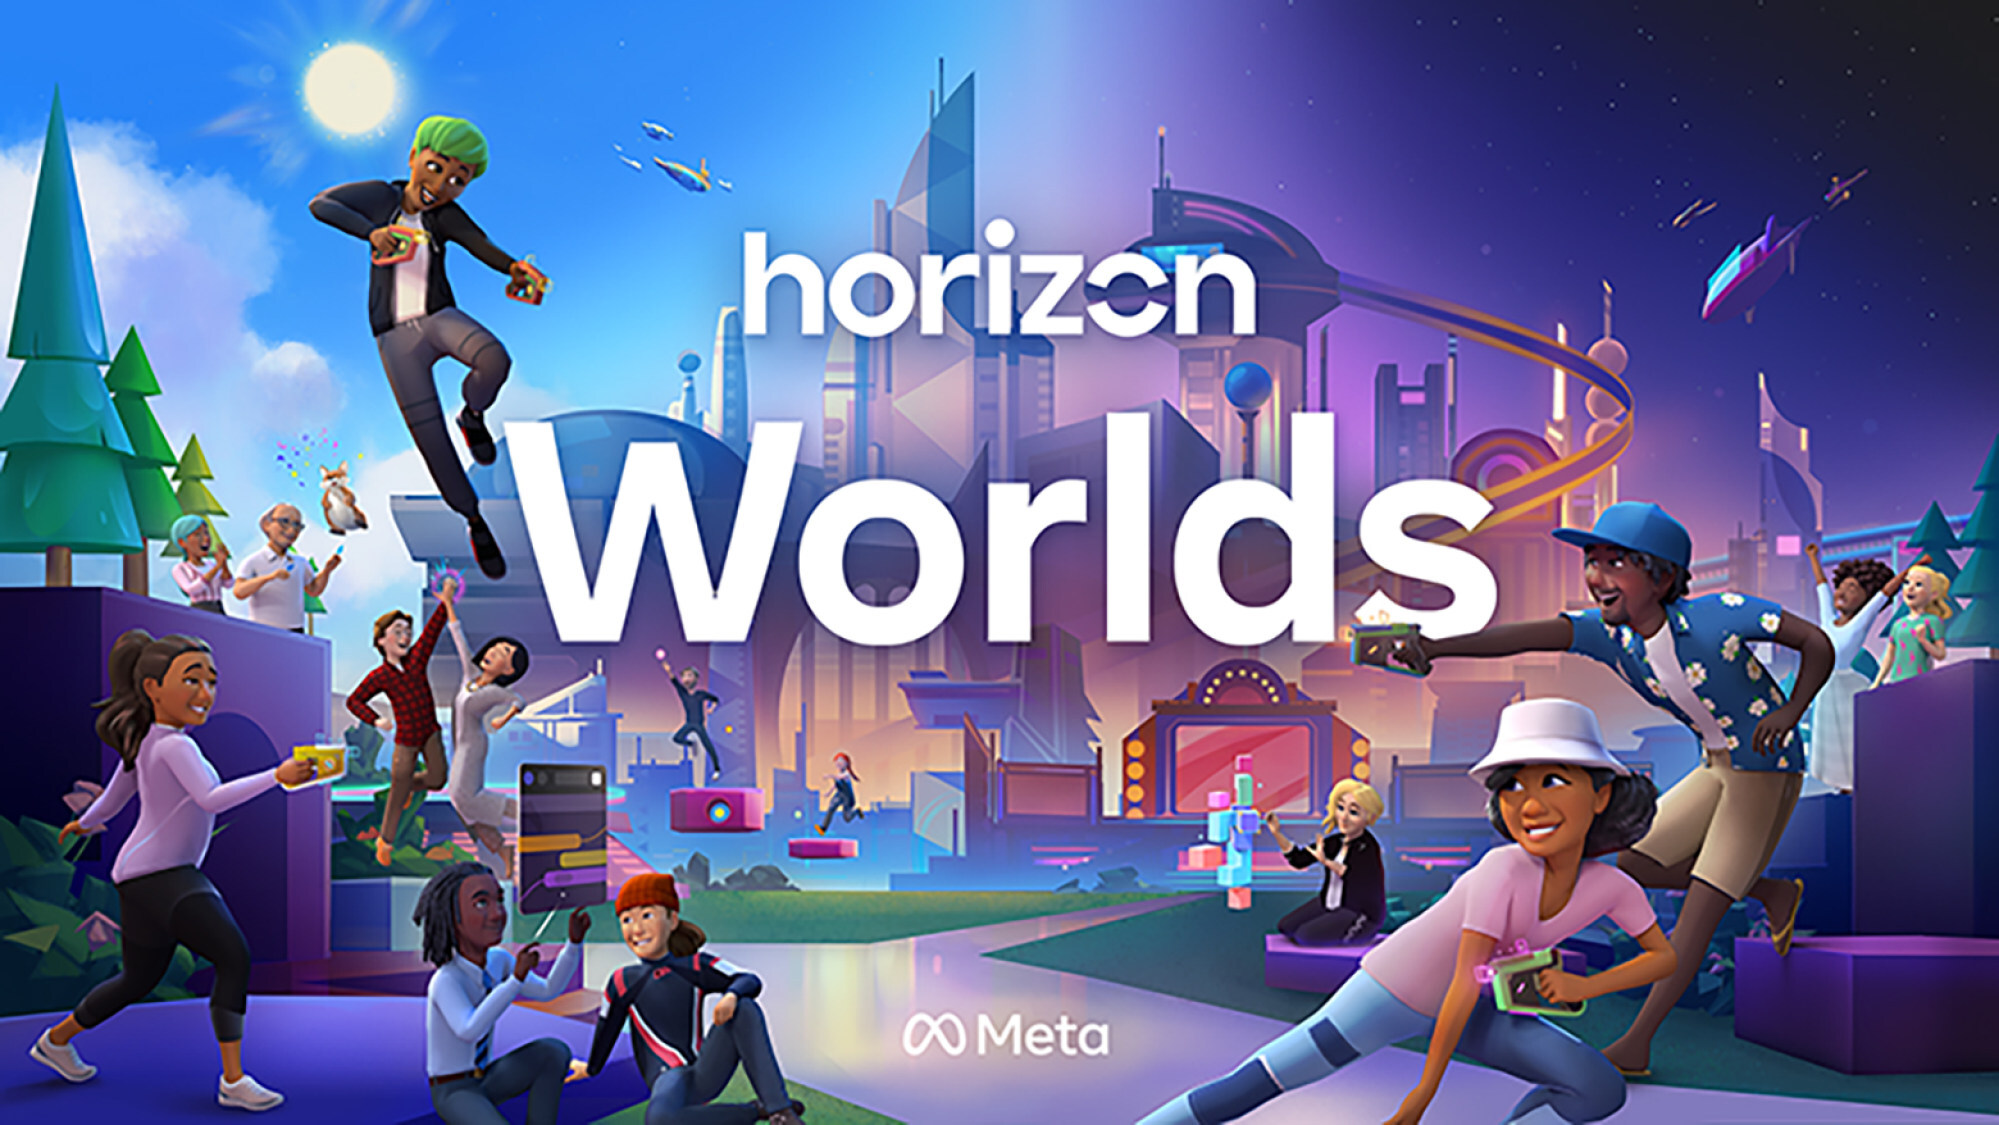 Meta ได้เปิดตัว Horizon Worlds แก่ทุกคนที่อายุ 18 ปีขึ้นไปในสหรัฐอเมริกาและแคนาดาในวันที่ 9 ธันวาคม หลังจากการทดสอบเบต้าสำหรับผู้ได้รับเชิญเท่านั้นเมื่อปีที่แล้ว